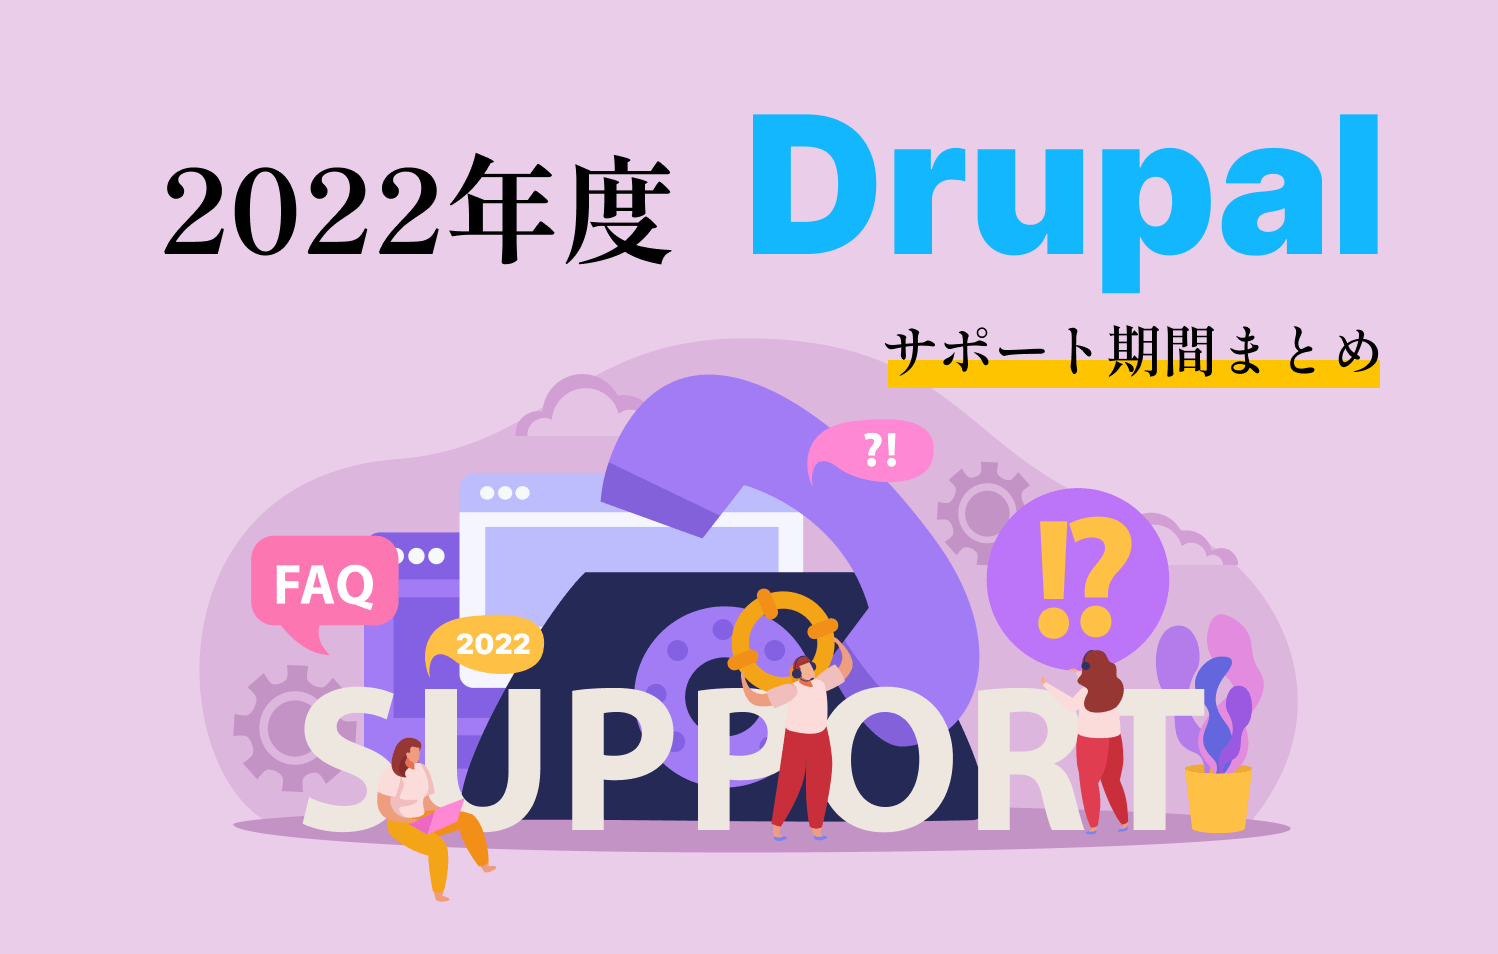 2022年度 Drupalサポート期間まとめのイメージ